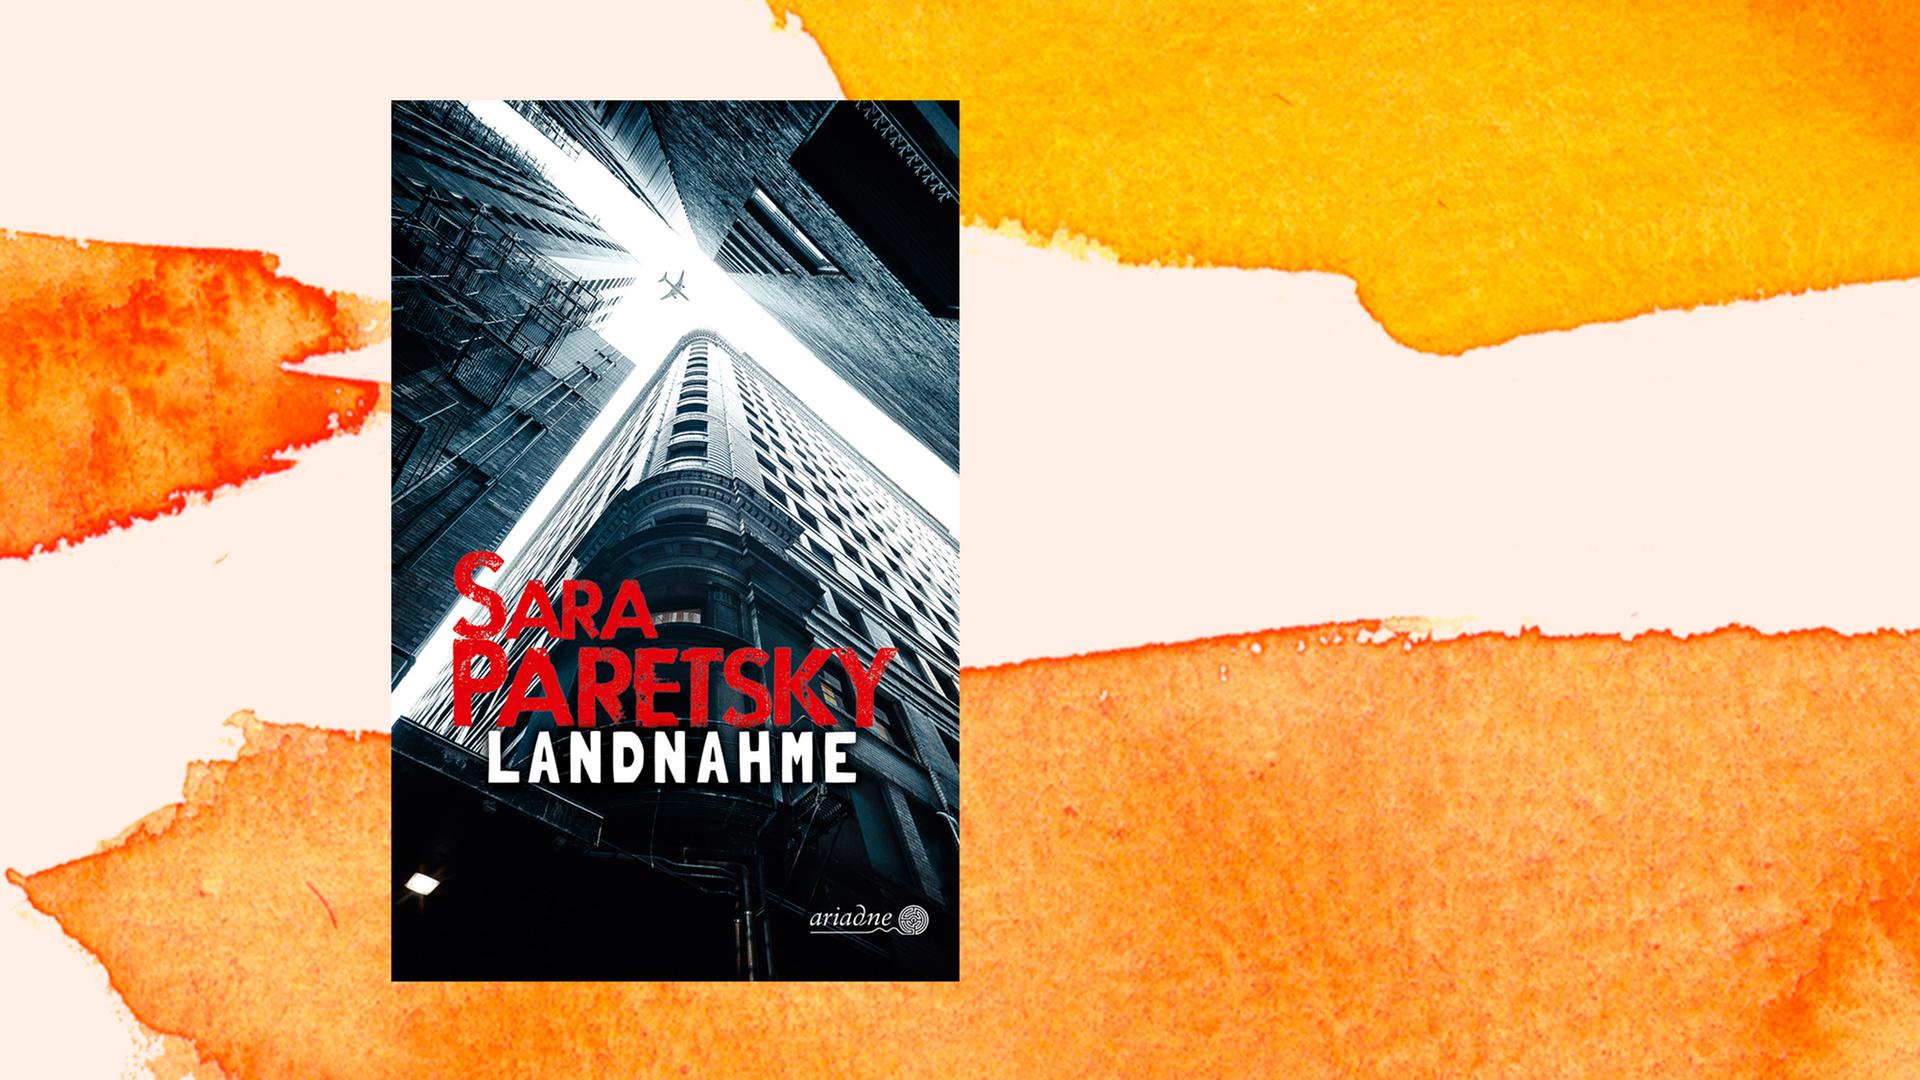 Cover des Buchs "Landnahme" von Sara Paretsky vor einem weiß-orangefarbenen Aquarell-Hintergrund